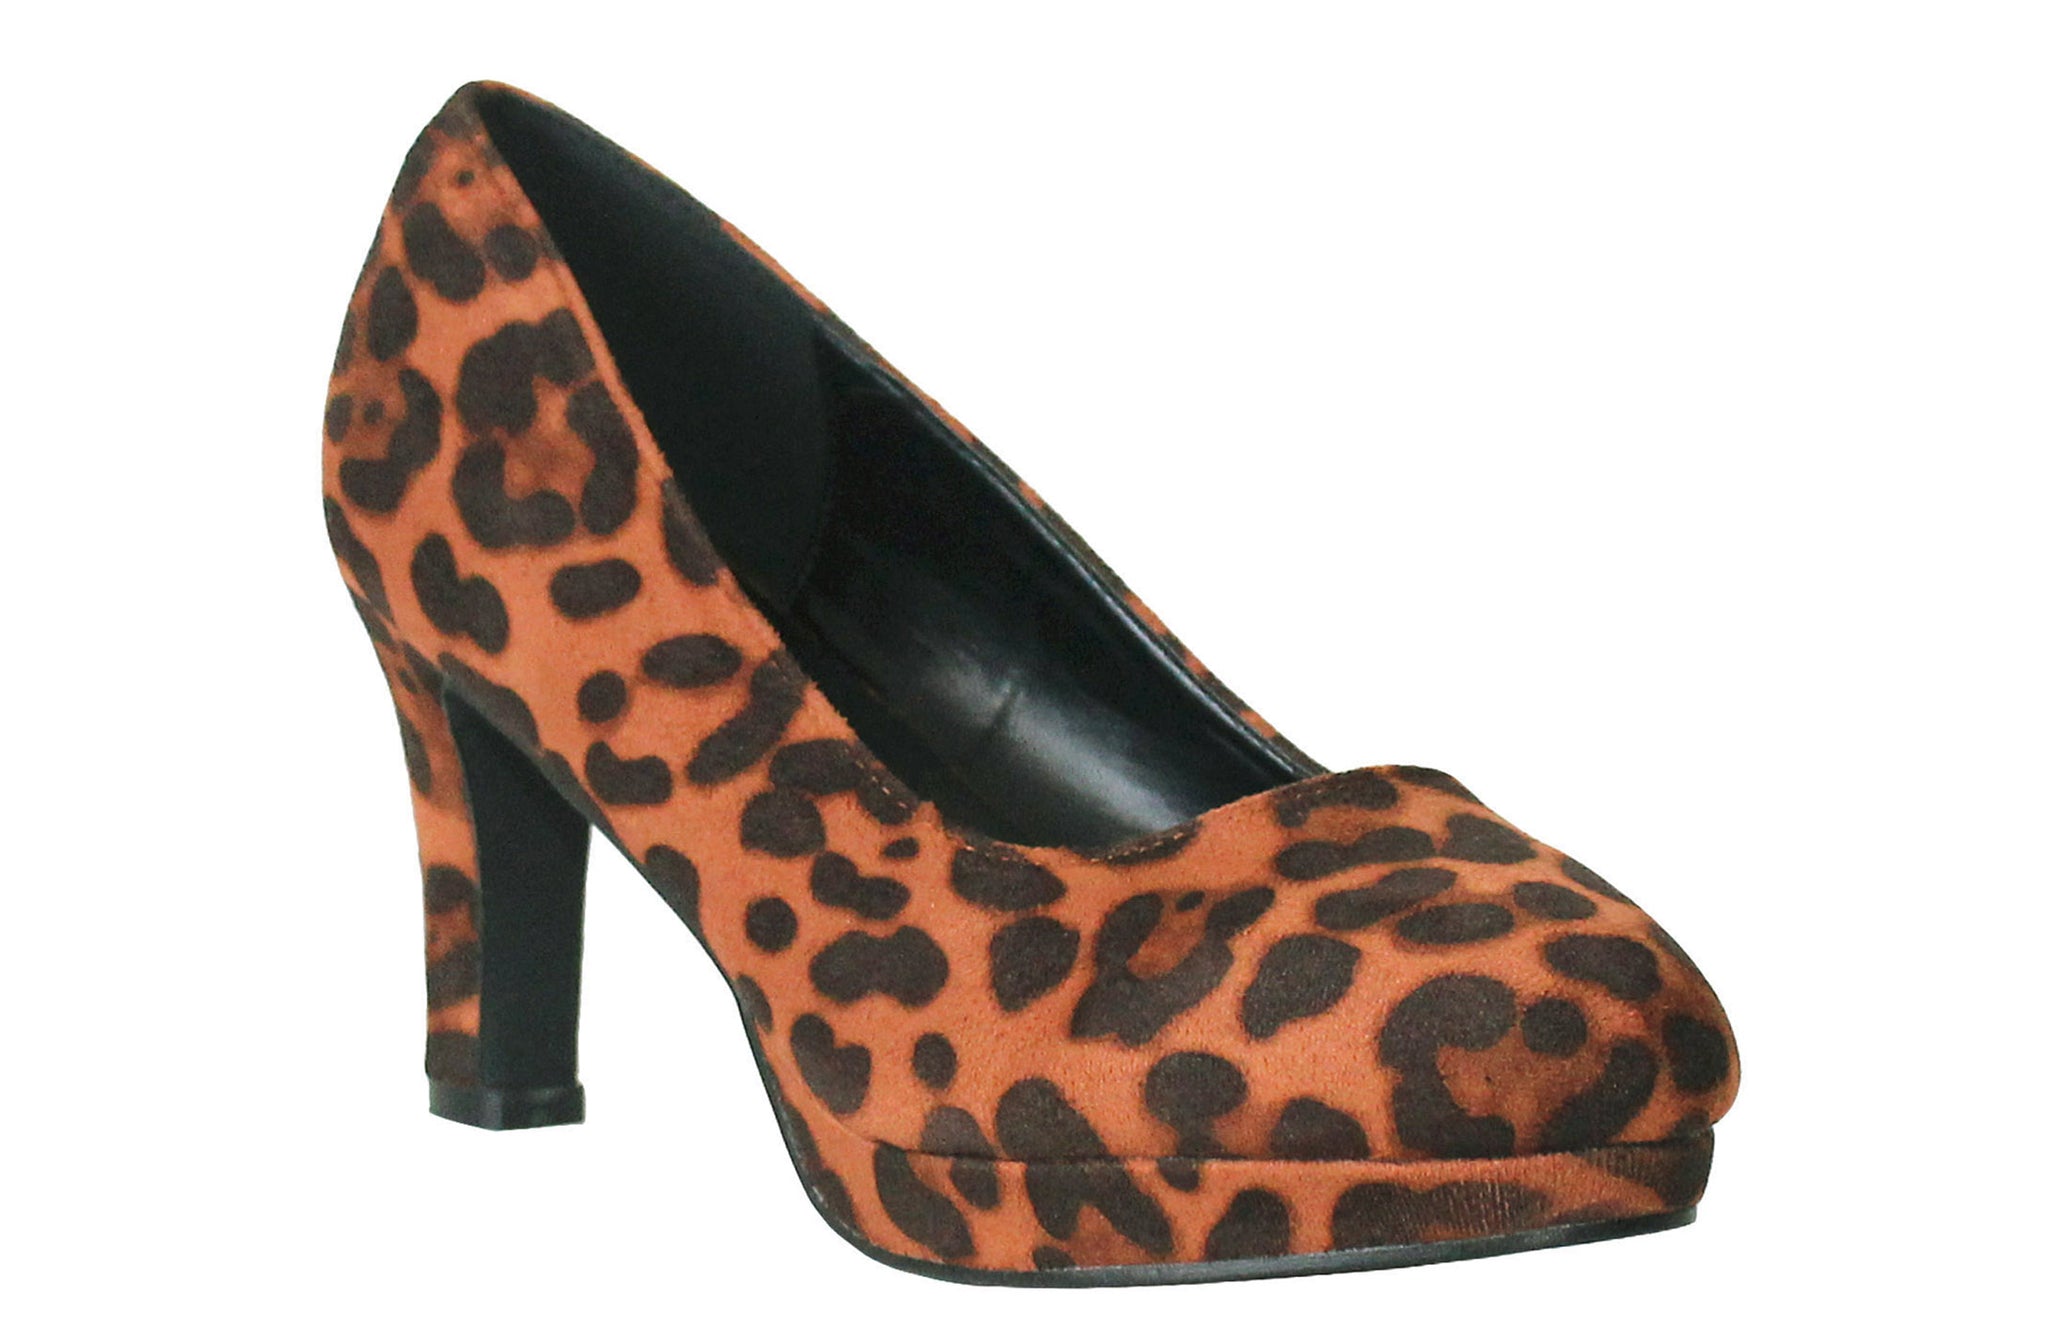 Womens Brown Leopard Print High Heel Platform Court Shoes